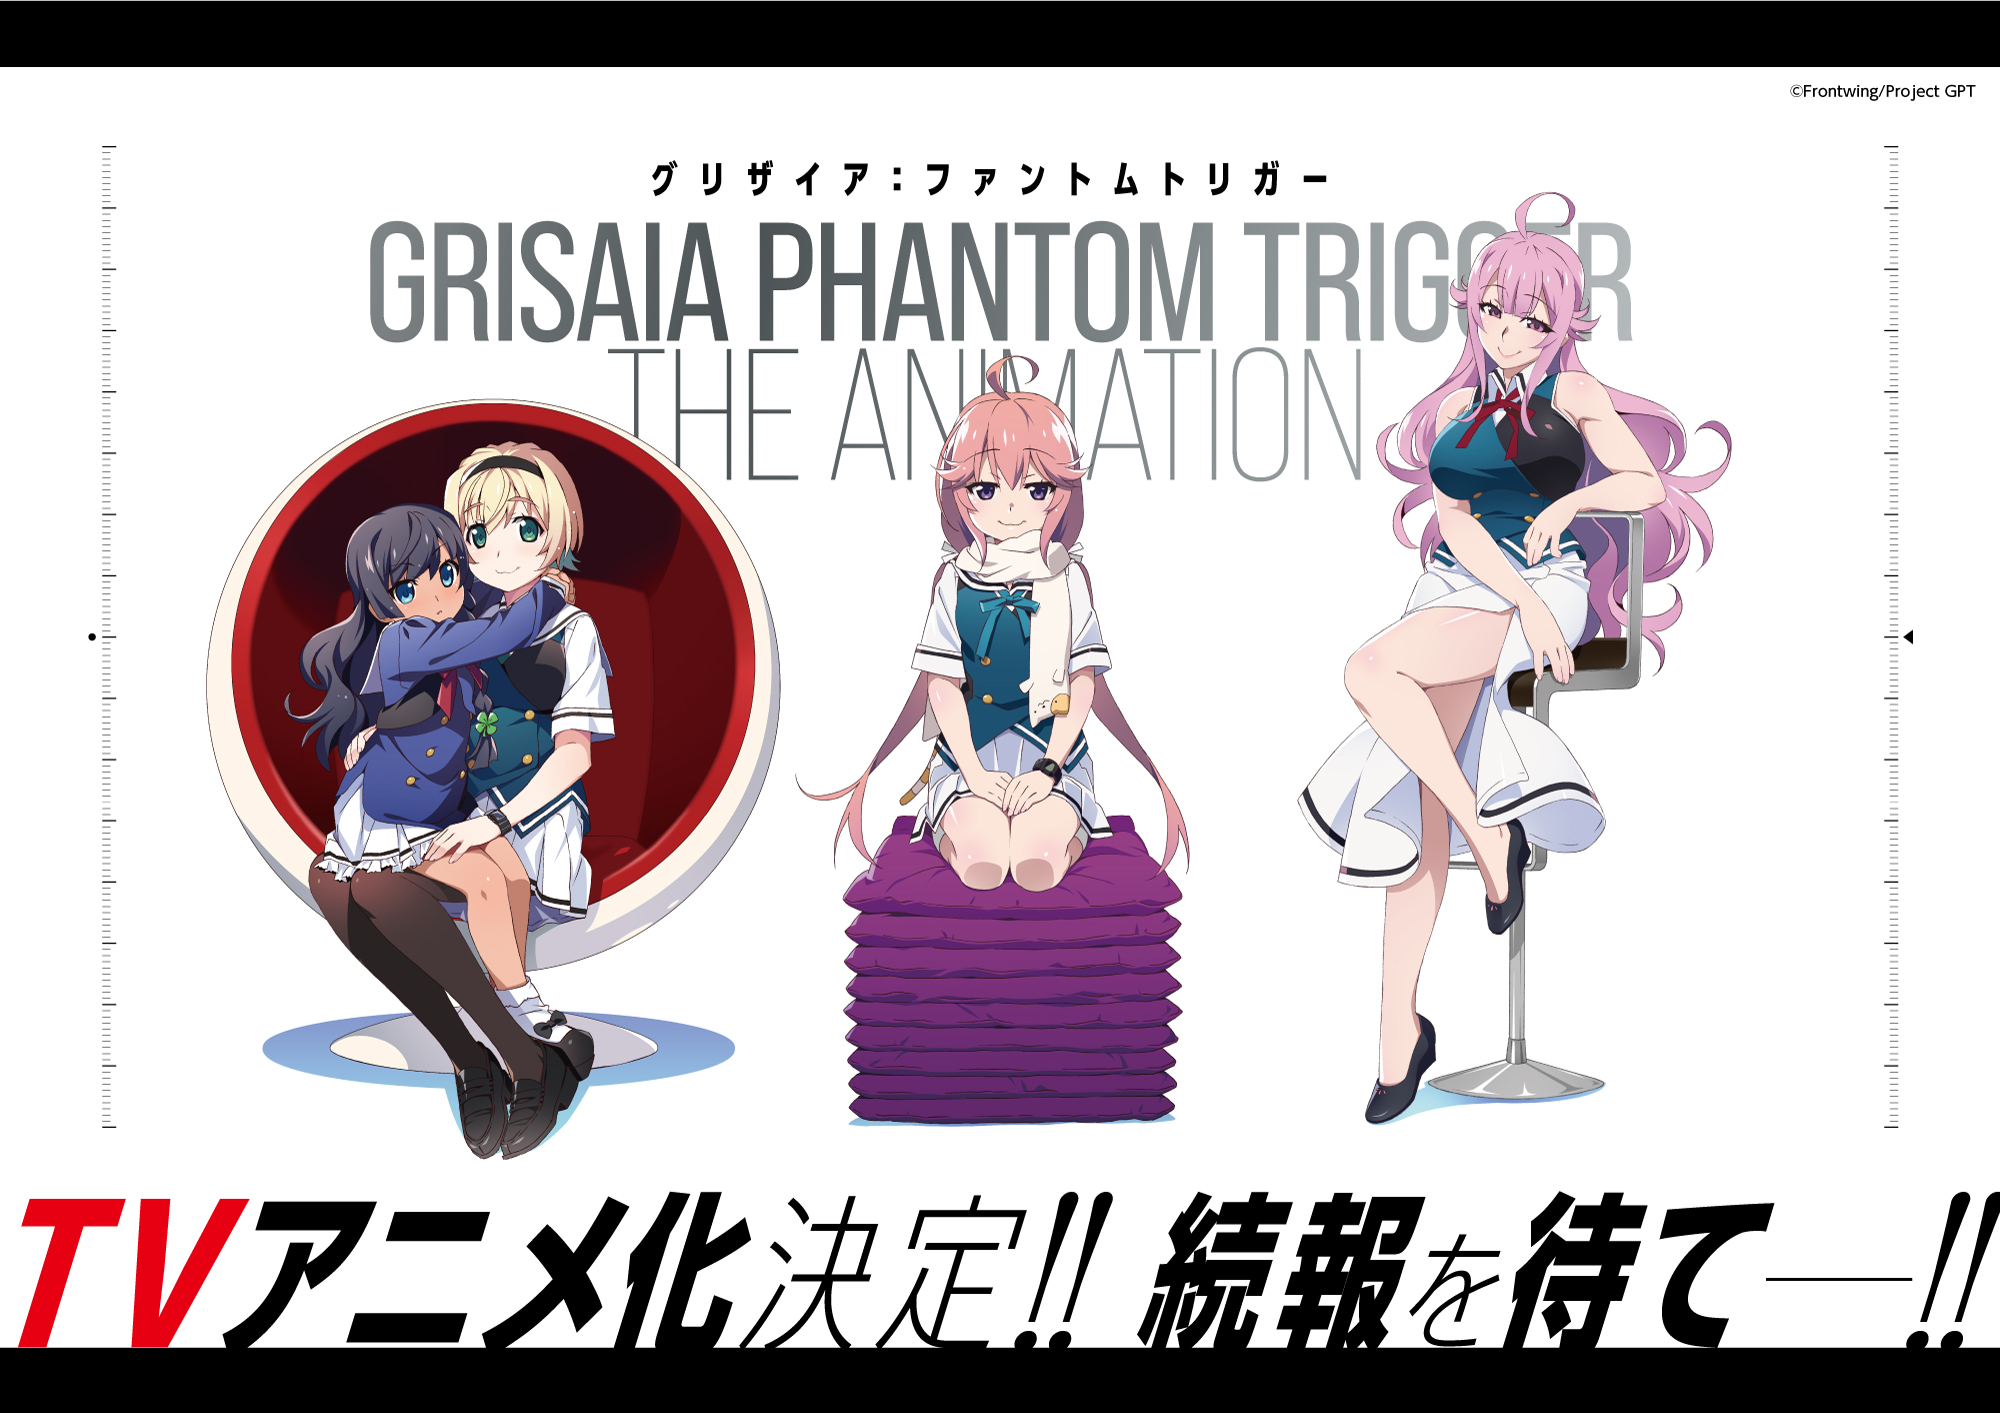 Grisaia Phantom Trigger anime series